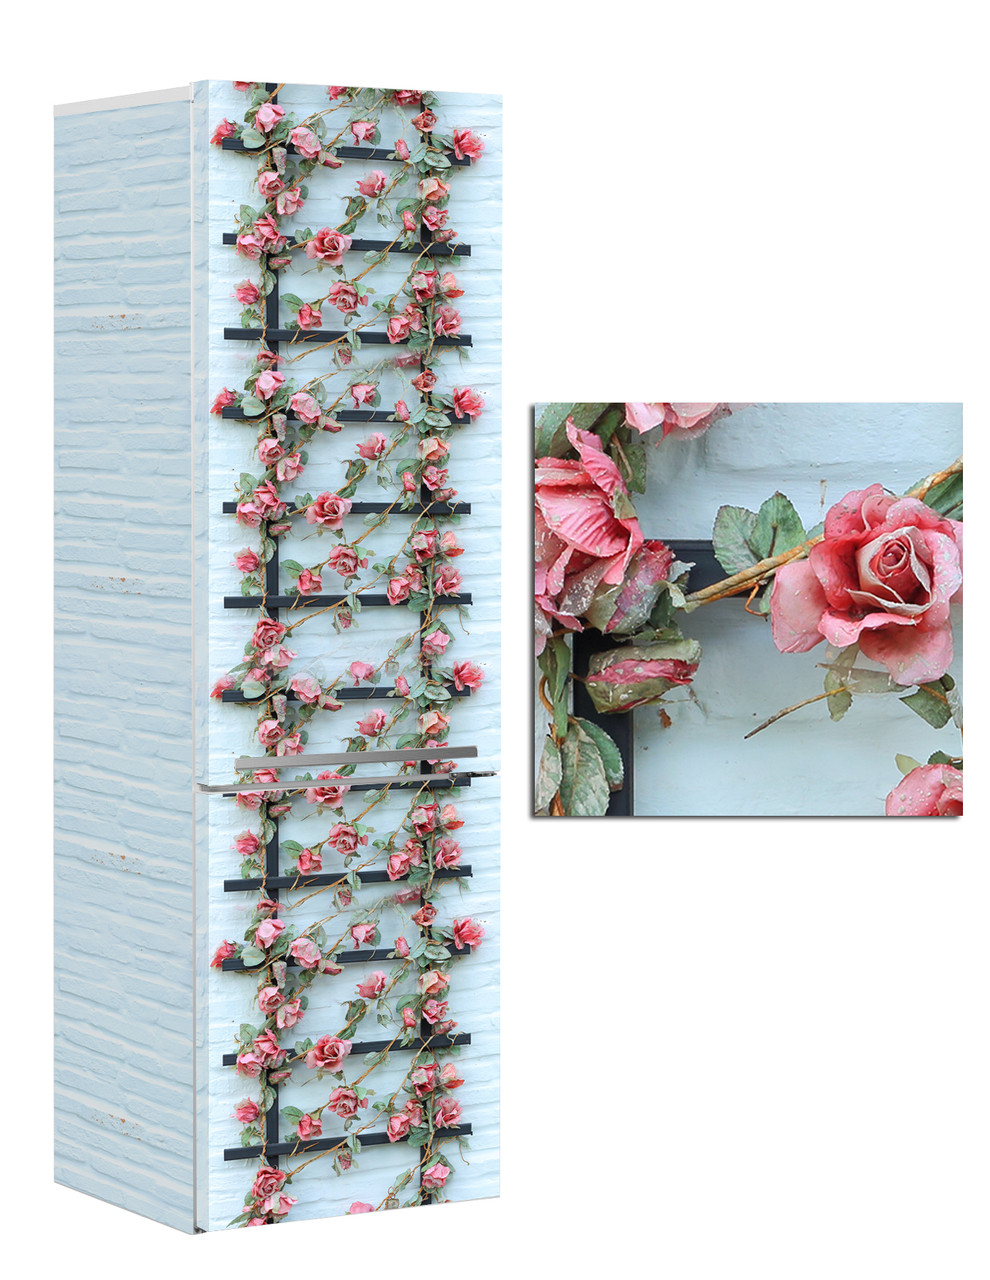 Наклейка на холодильник с плетистыми розовыми розами на фоне бирюзовой кирпичной стены.